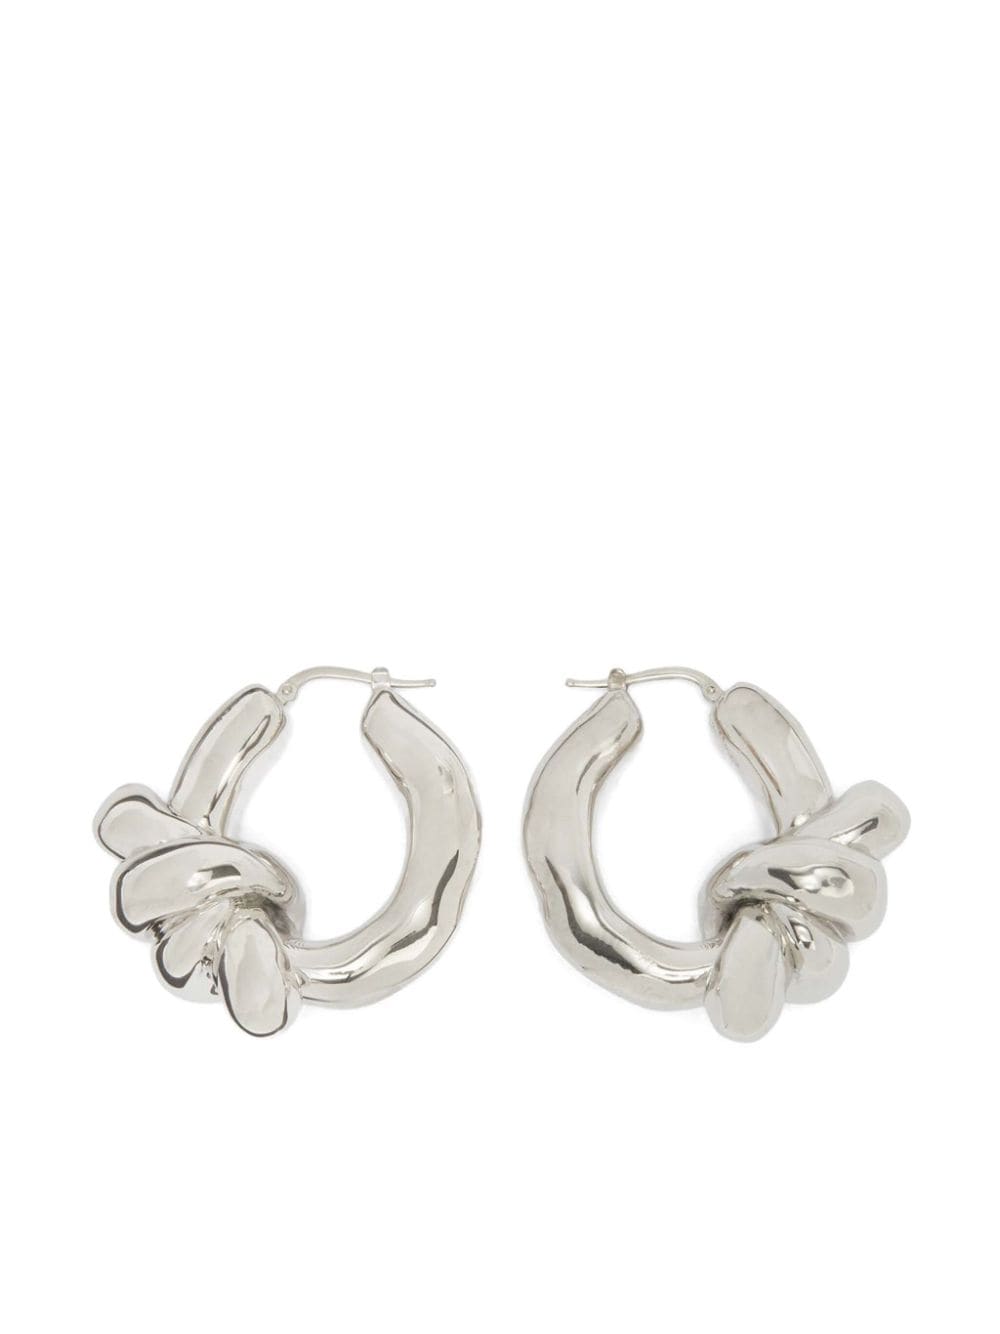 Jil Sander knot hoop earrings - Silver von Jil Sander